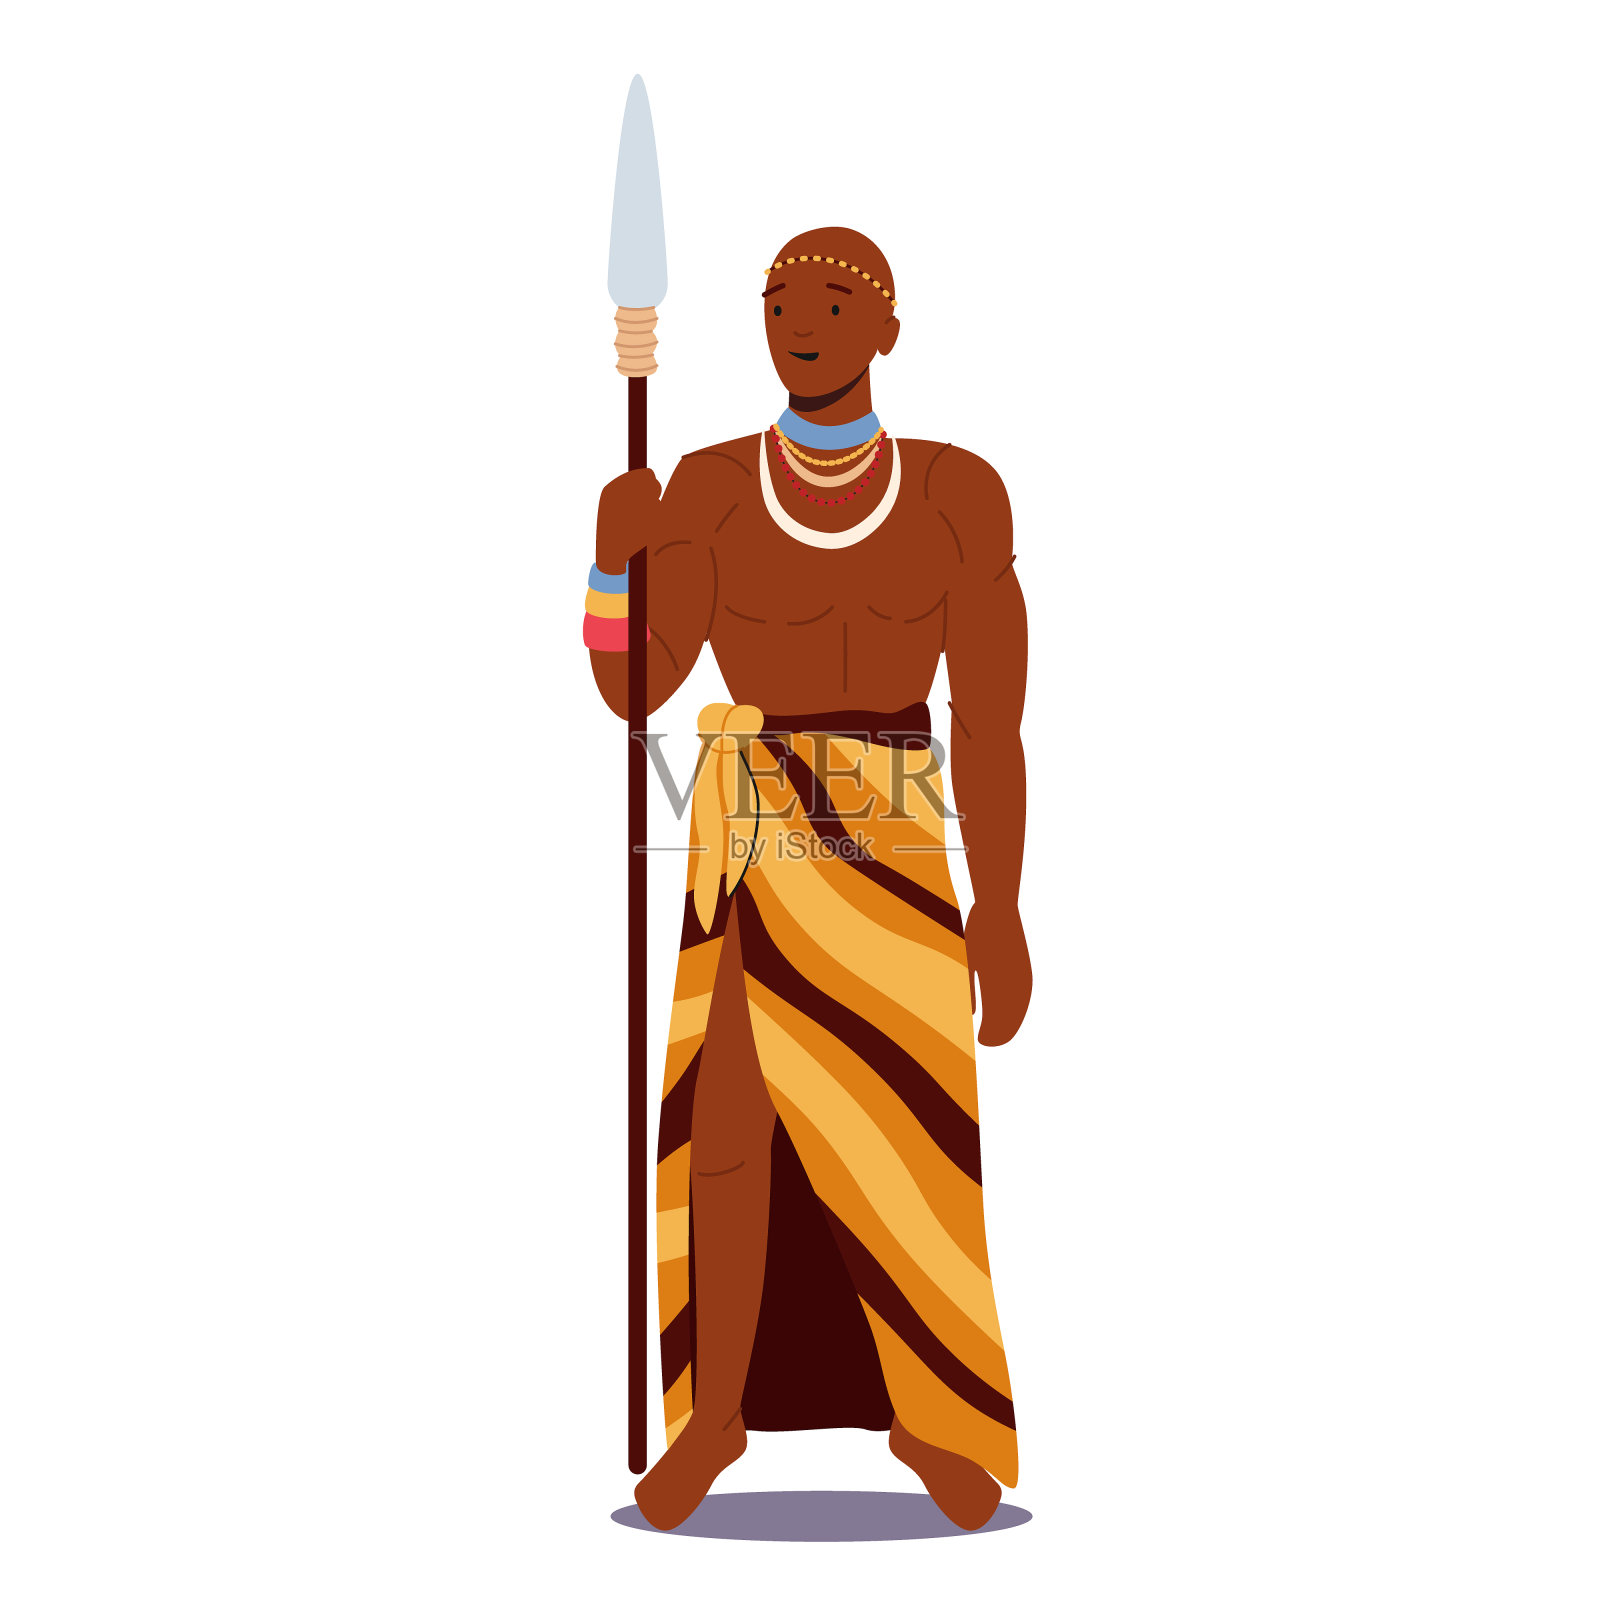 非洲人穿着部落服装和项链手持长矛。男性角色的肖像与黑皮肤，战士与武器插画图片素材